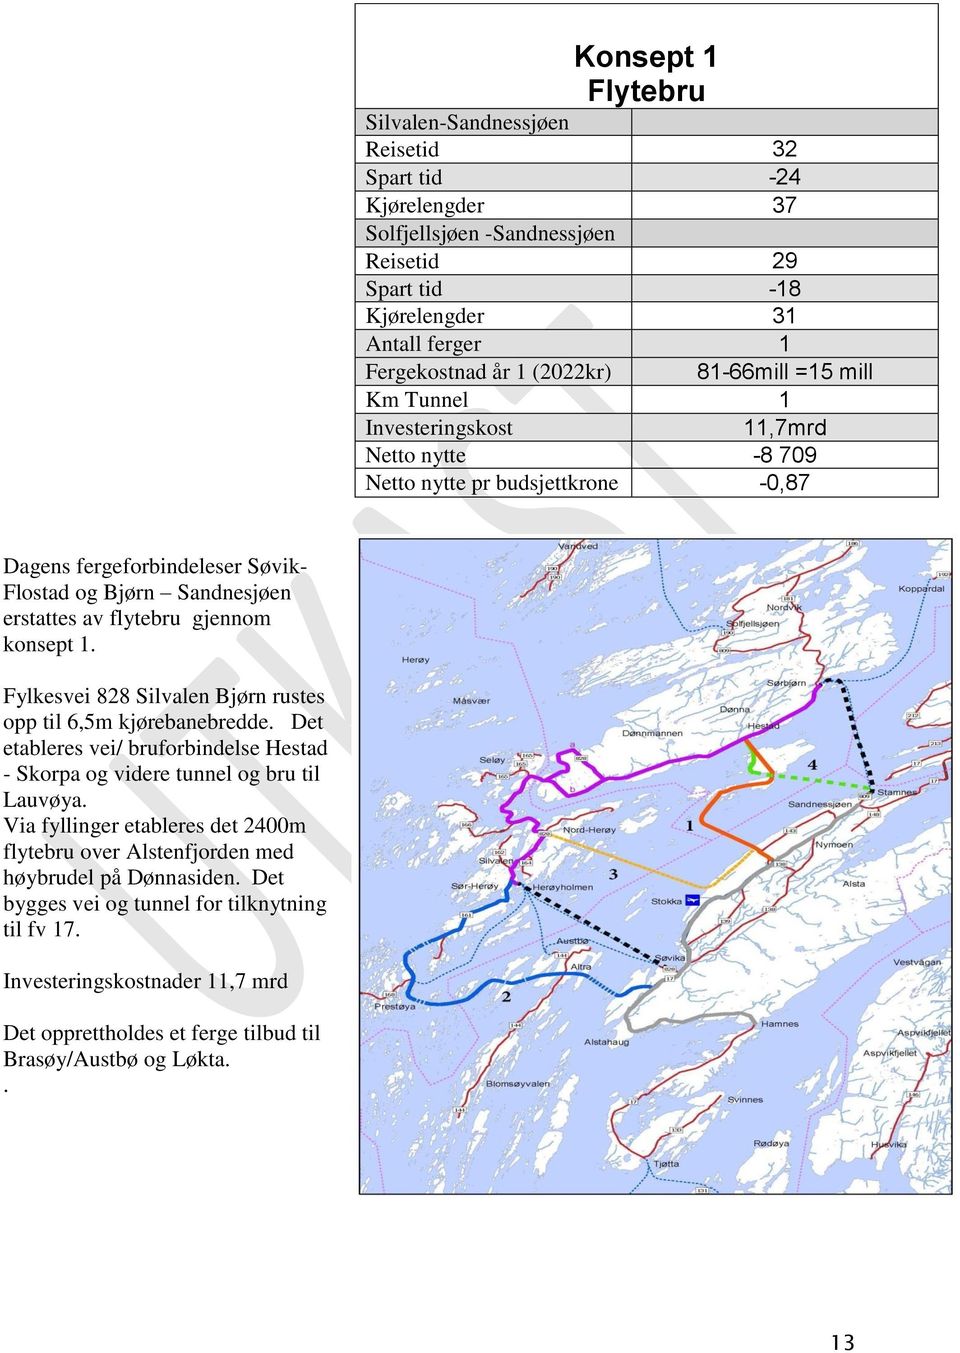 Fylkesvei 88 Silvalen Bjørn rustes opp til 6,5m kjørebanebredde. Det etableres vei/ bruforbindelse Hestad - Skorpa og videre tunnel og bru til Lauvøya.